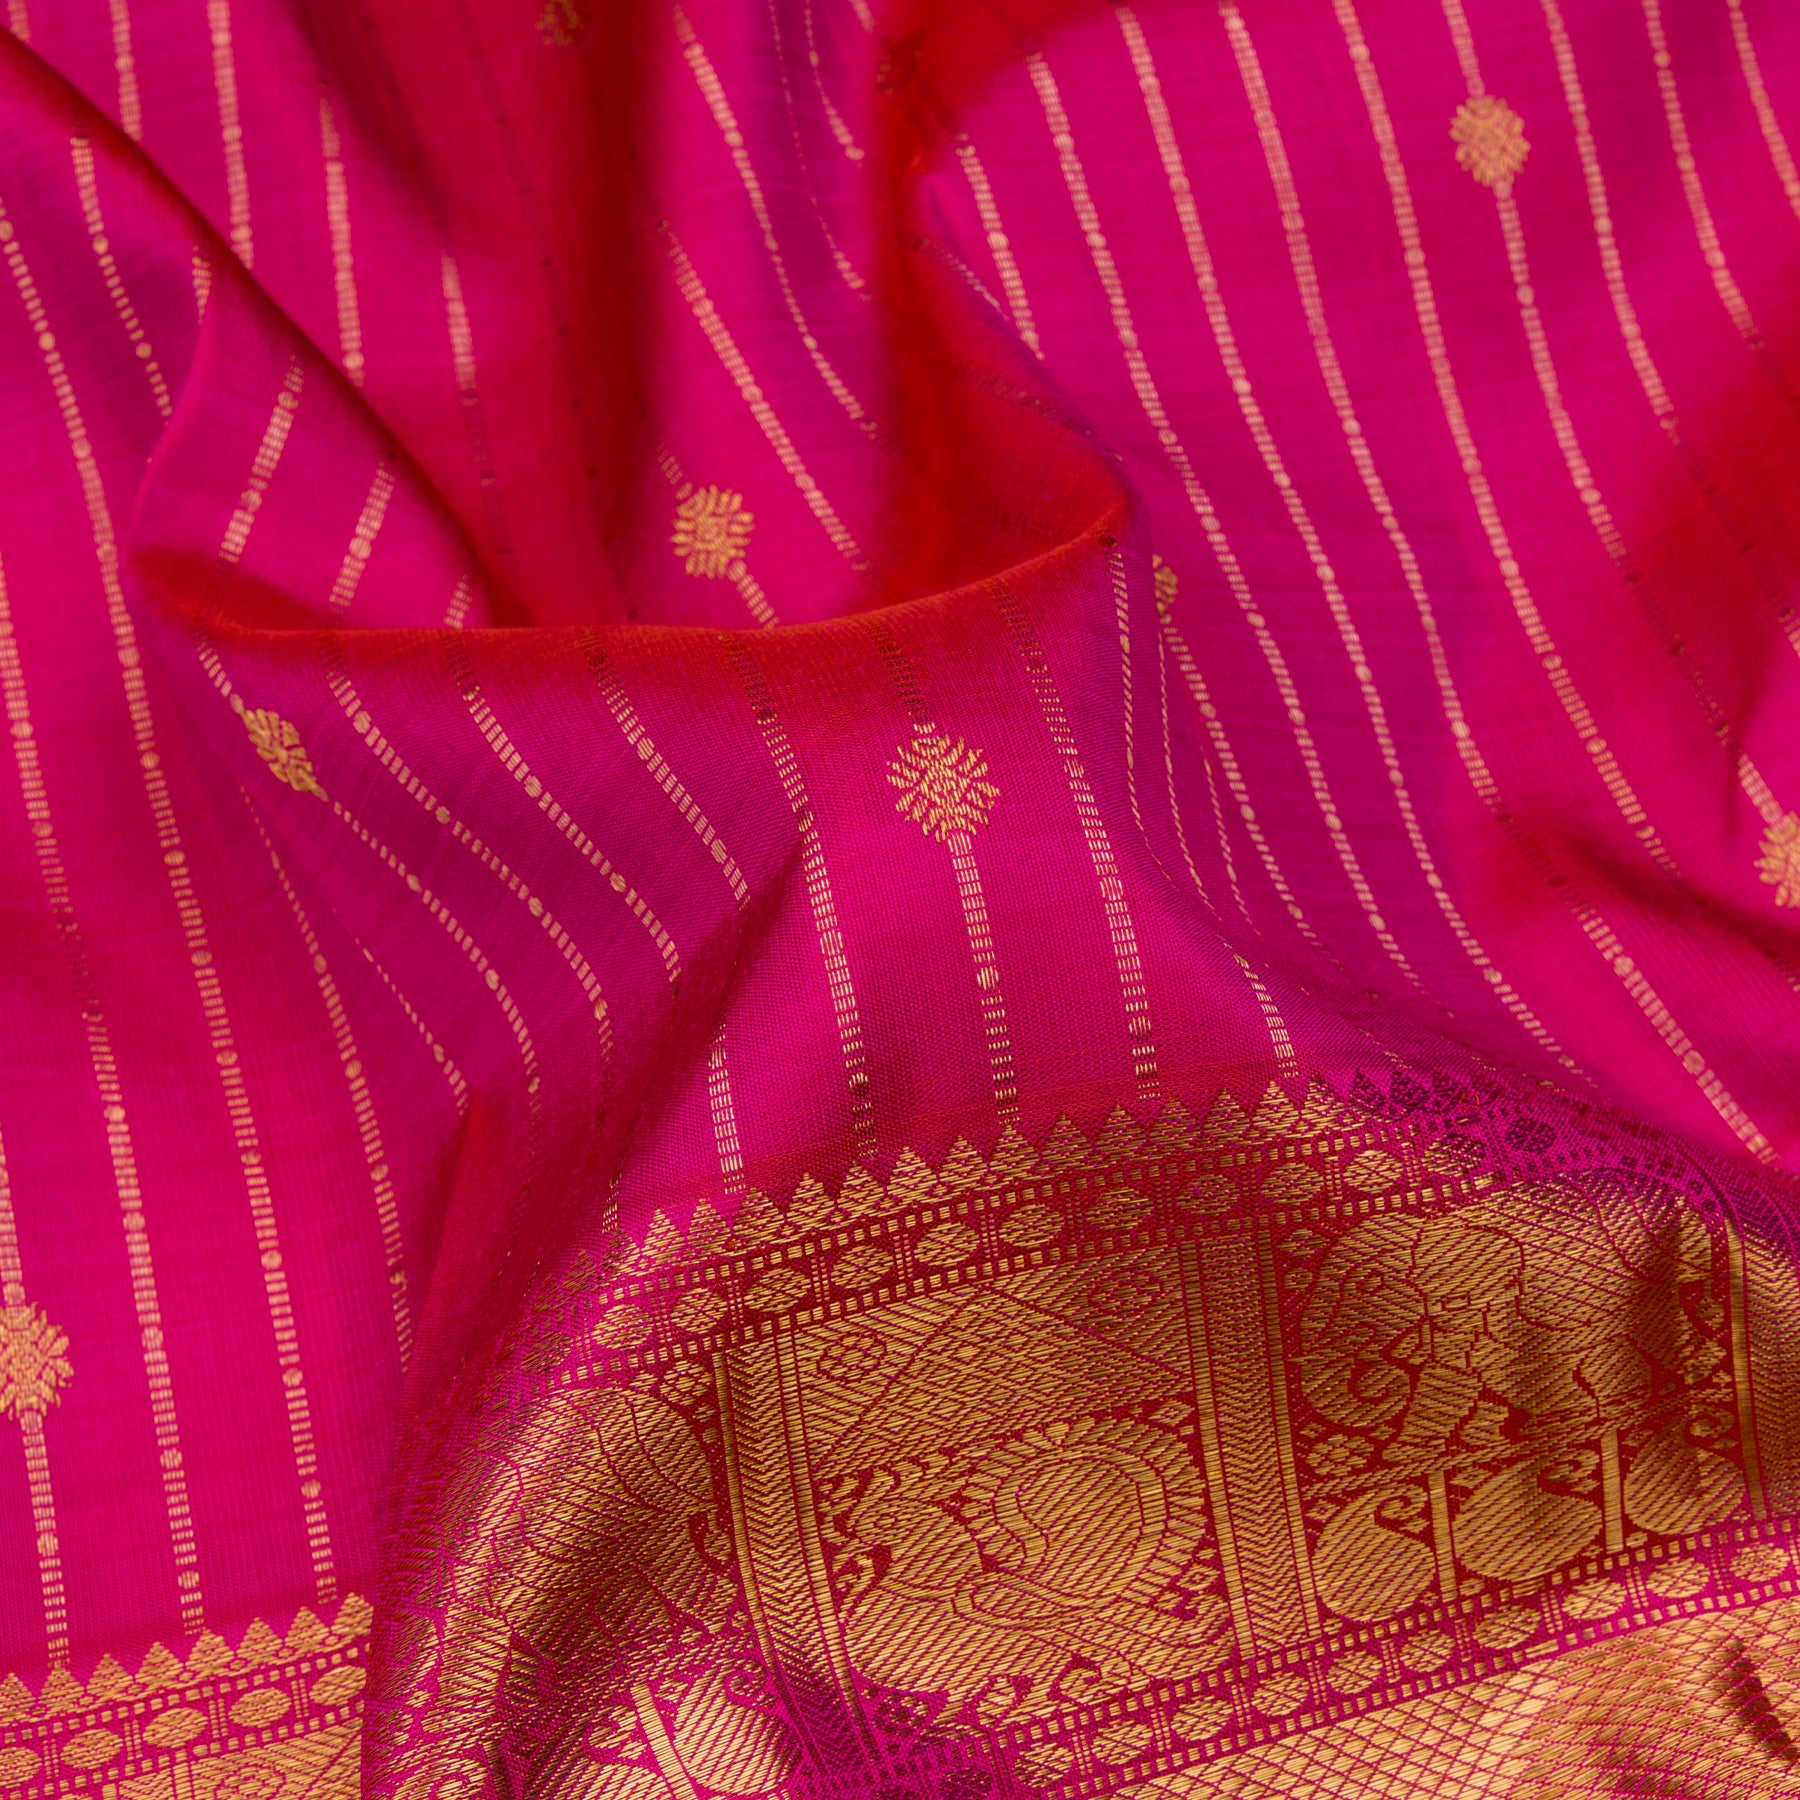 Kanakavalli Kanjivaram Silk Sari 23-599-HS001-10808 - Fabric View